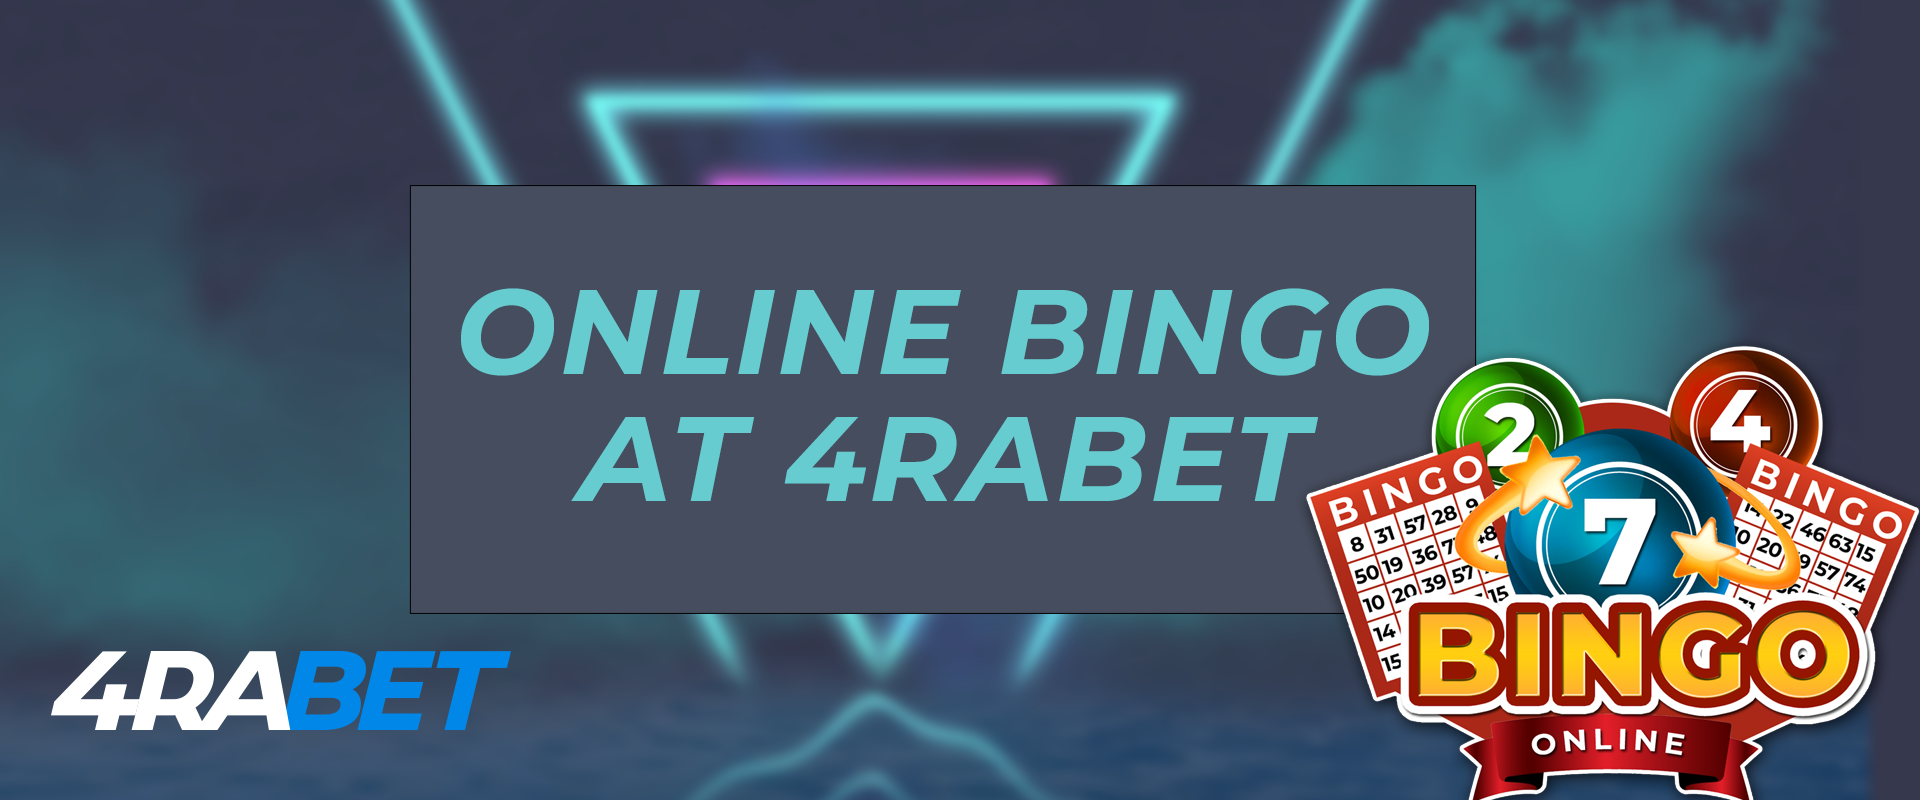 4rabet online bingo.